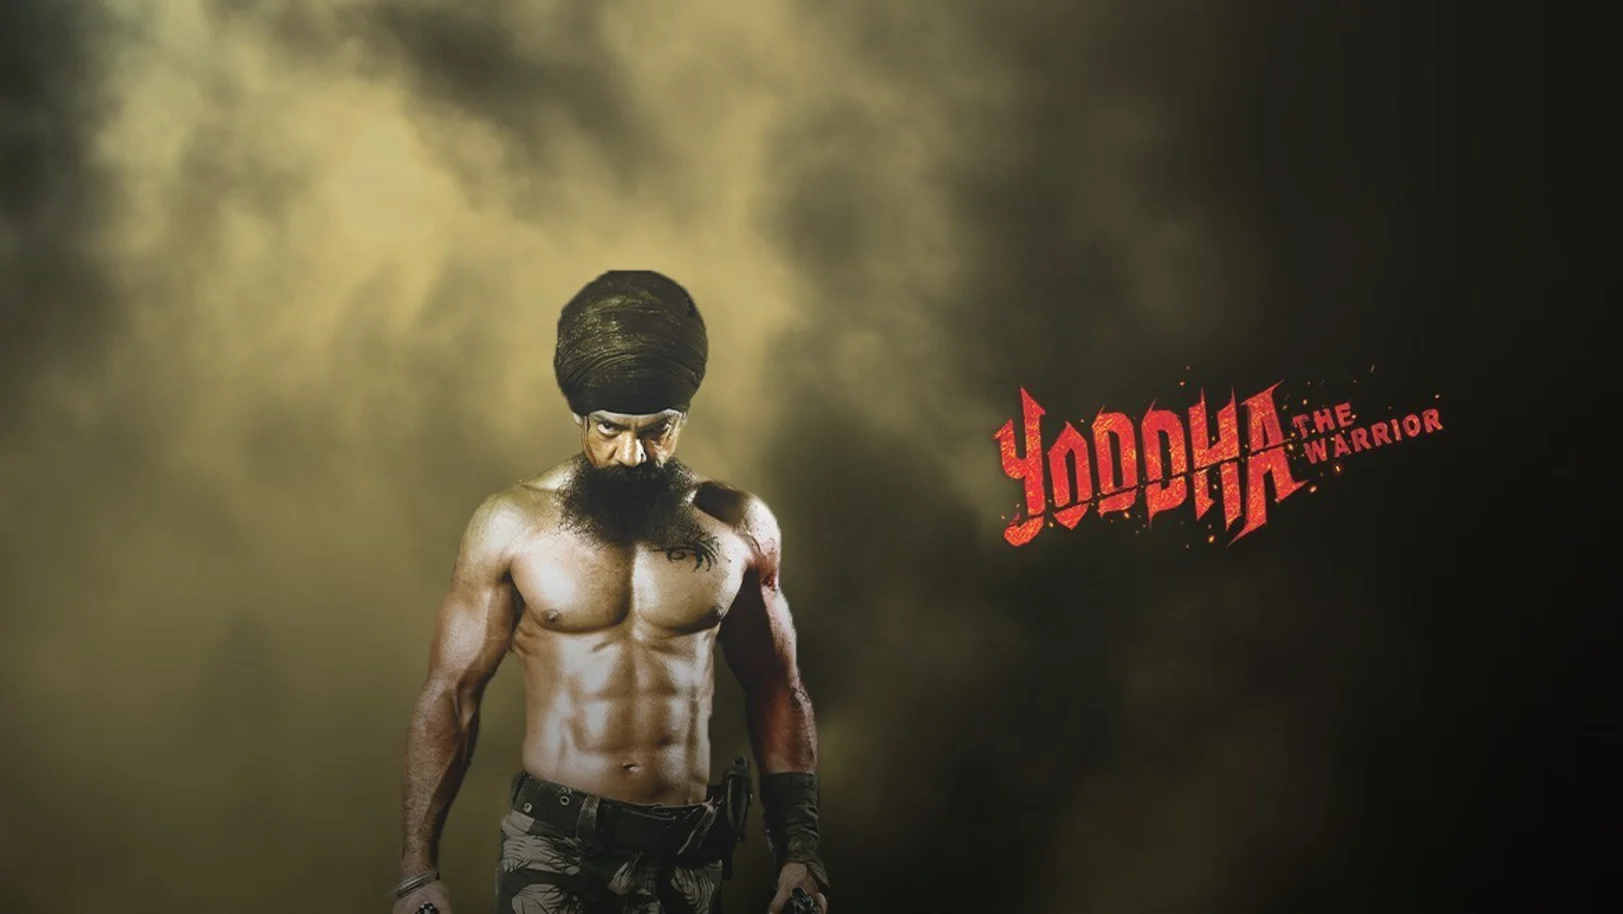 Yoddha - The Warrior Movie